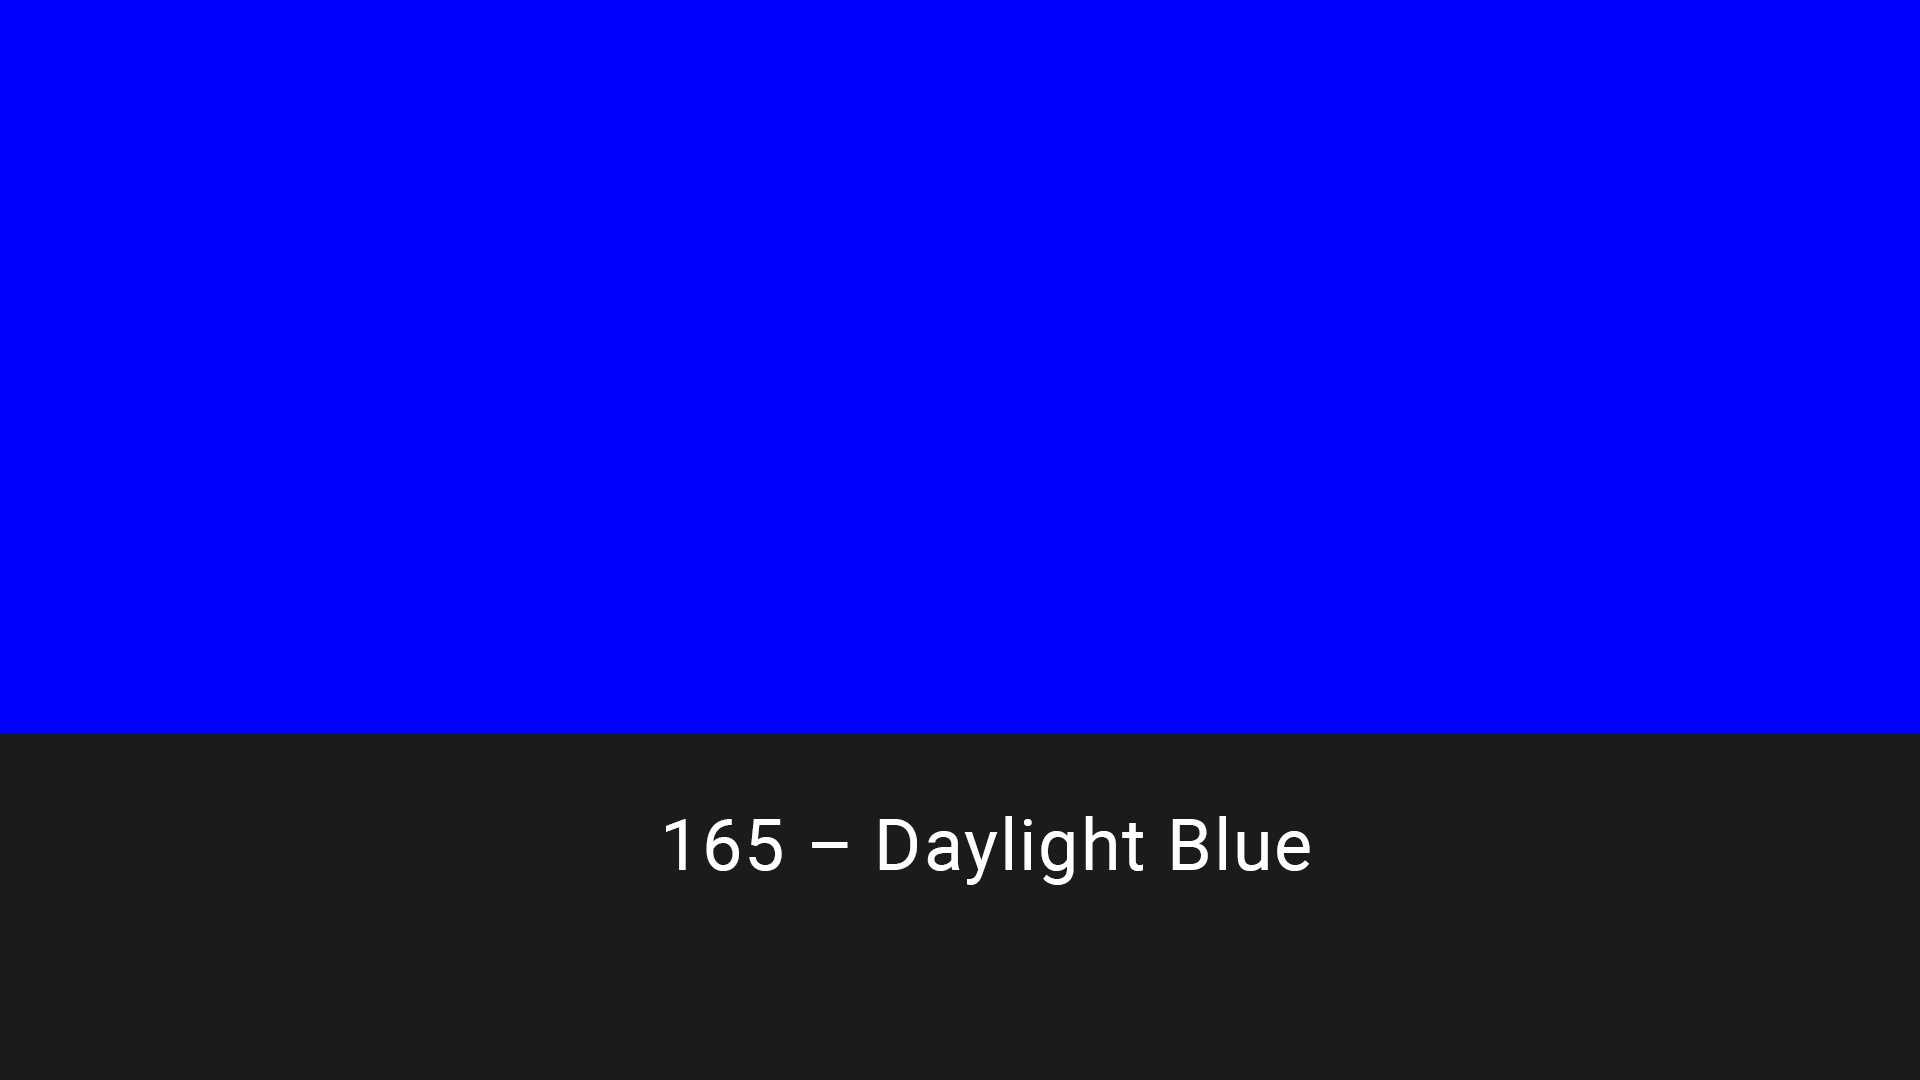 Cotech filters 165 Daylight Blue